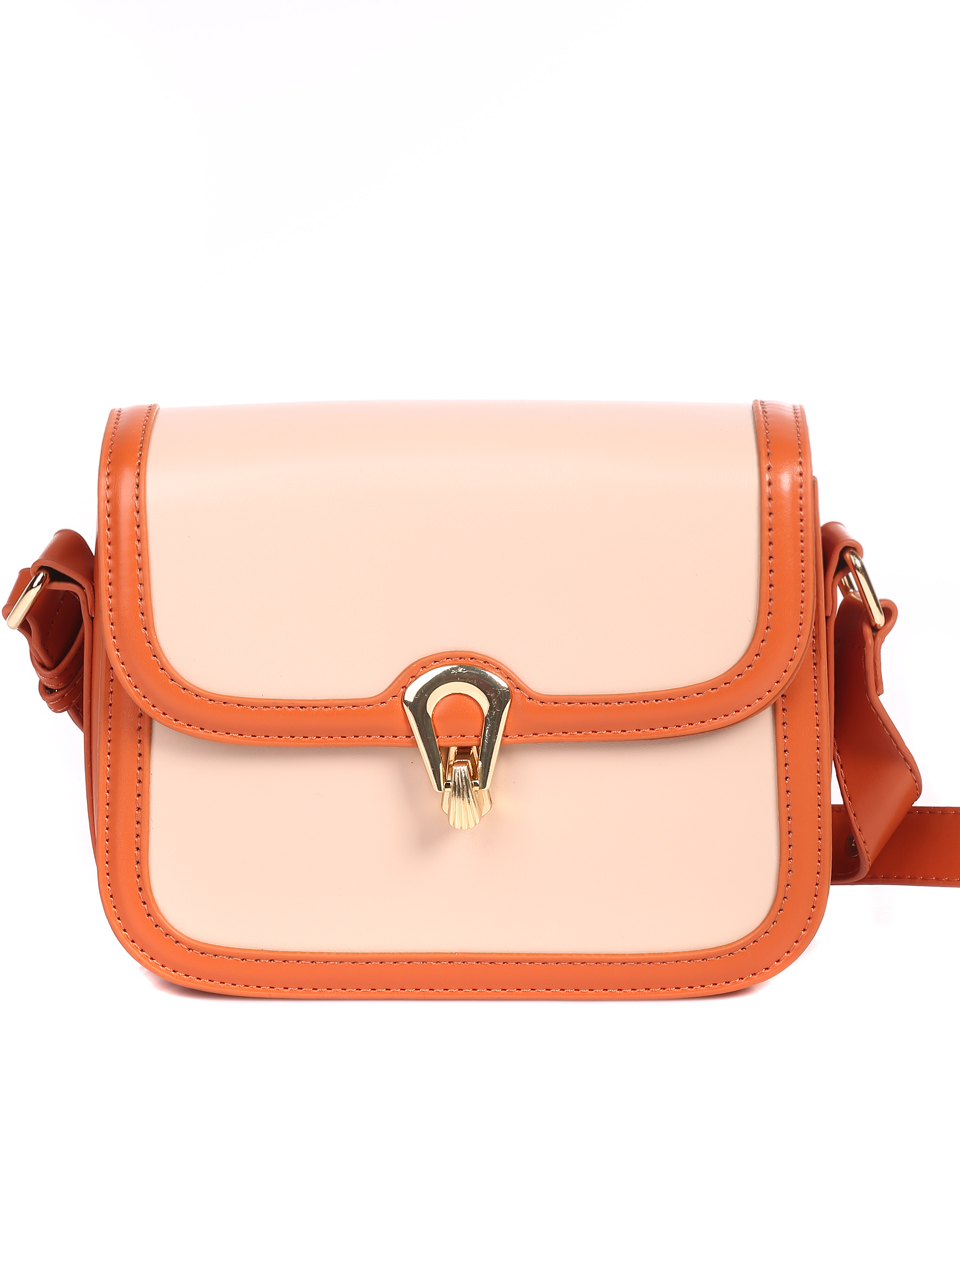 Ежедневна дамска чанта в оранжево 8016 orange